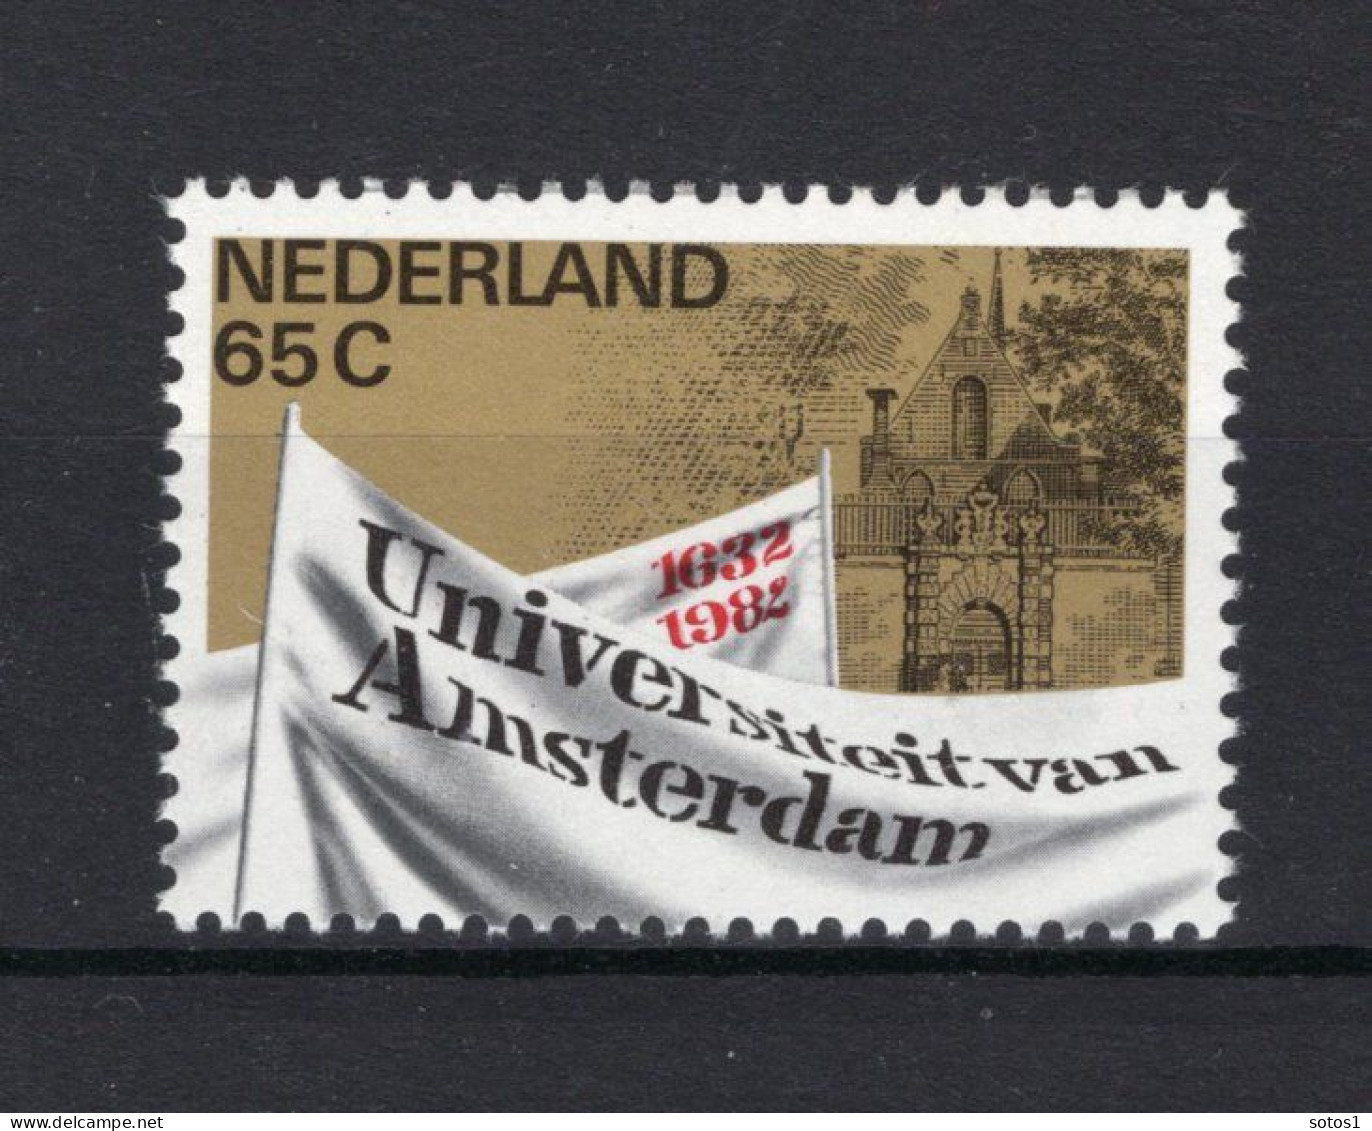 NEDERLAND 1260 MNH 1982 - 350 Jaar Universiteit Amsterdam -3 - Ungebraucht